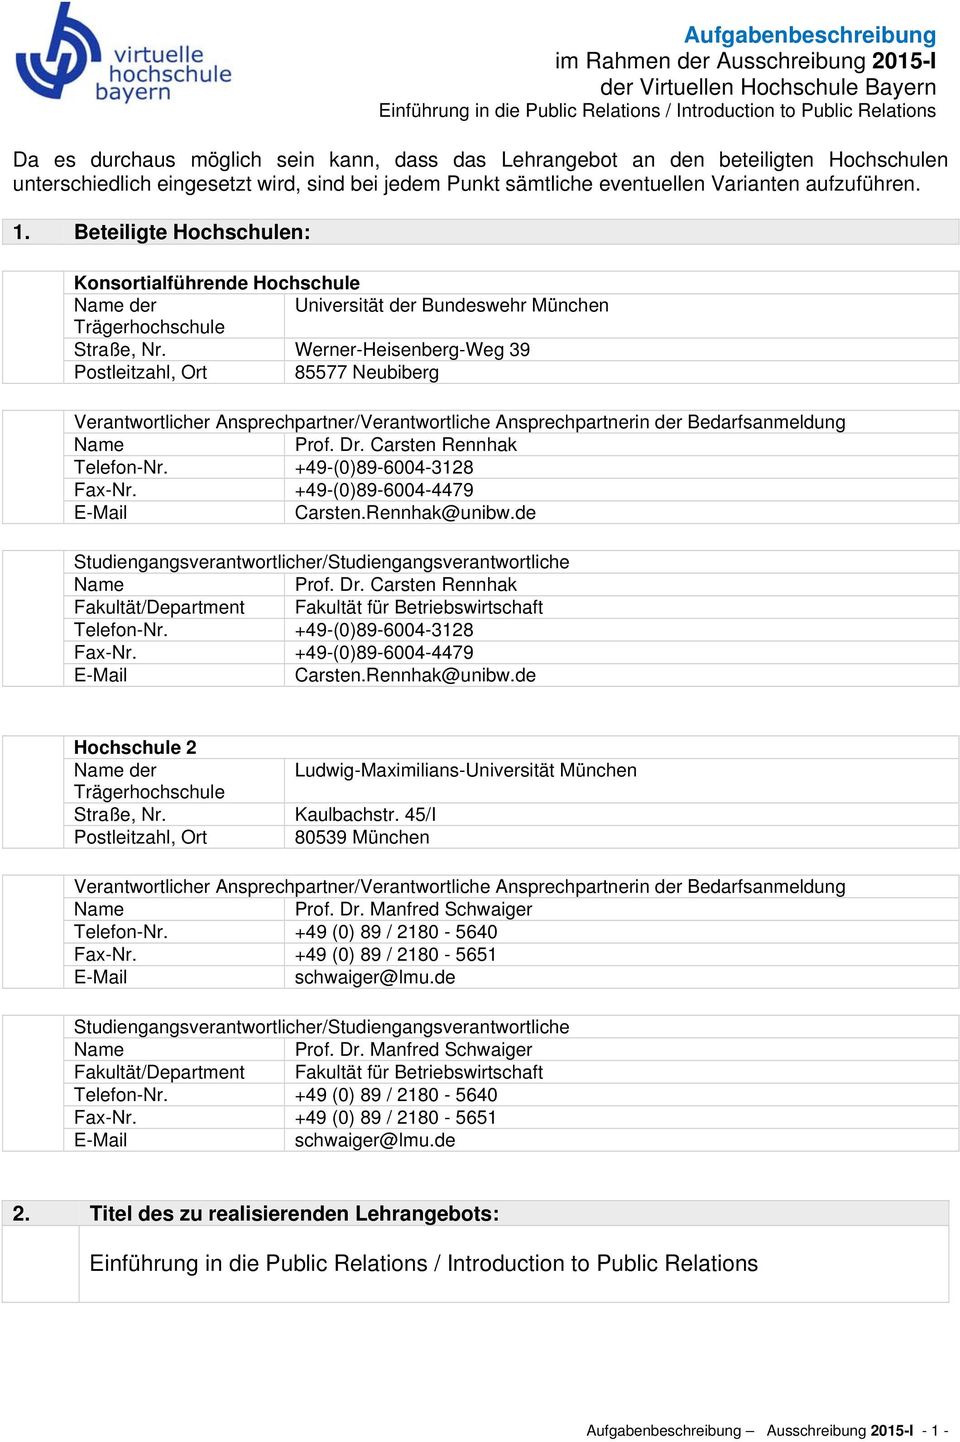 Beteiligte Hochschulen: Konsortialführende Hochschule der Universität der Bundeswehr München Trägerhochschule Straße, Nr.